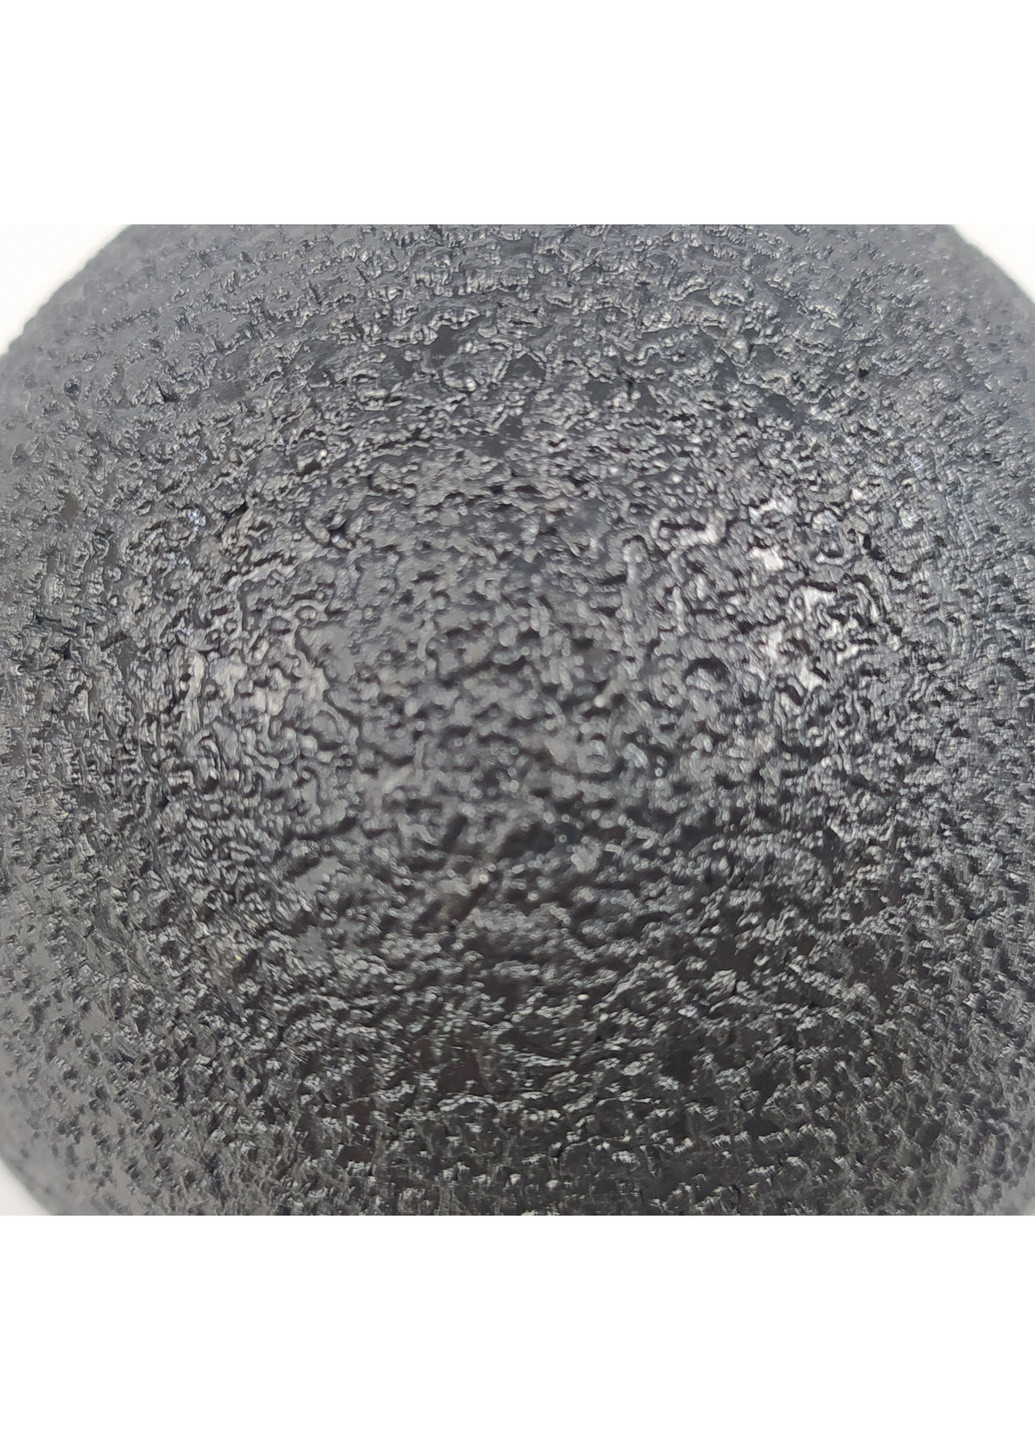 Масажний м'ячик EPP 8 см чорний (ЕПП-м'яч для масажу спини, попереку, рук, ніг, міофасціального релізу і самомасажу) EasyFit (243205373)